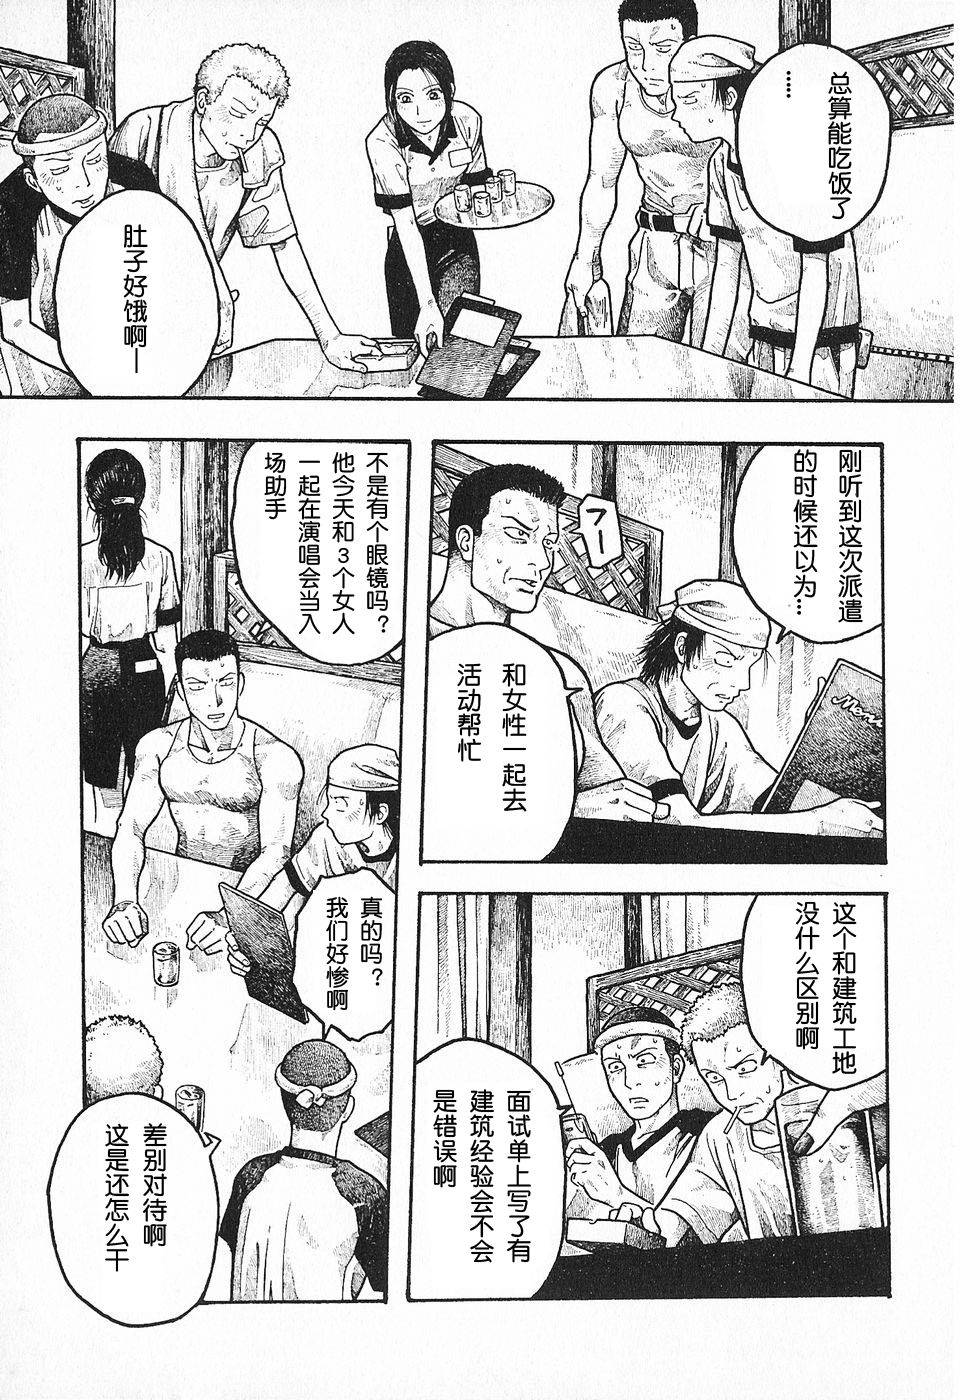 周刊石川雅之 第五周 趣味的時間 漫畫線上看 動漫戲說 Acgn Cc